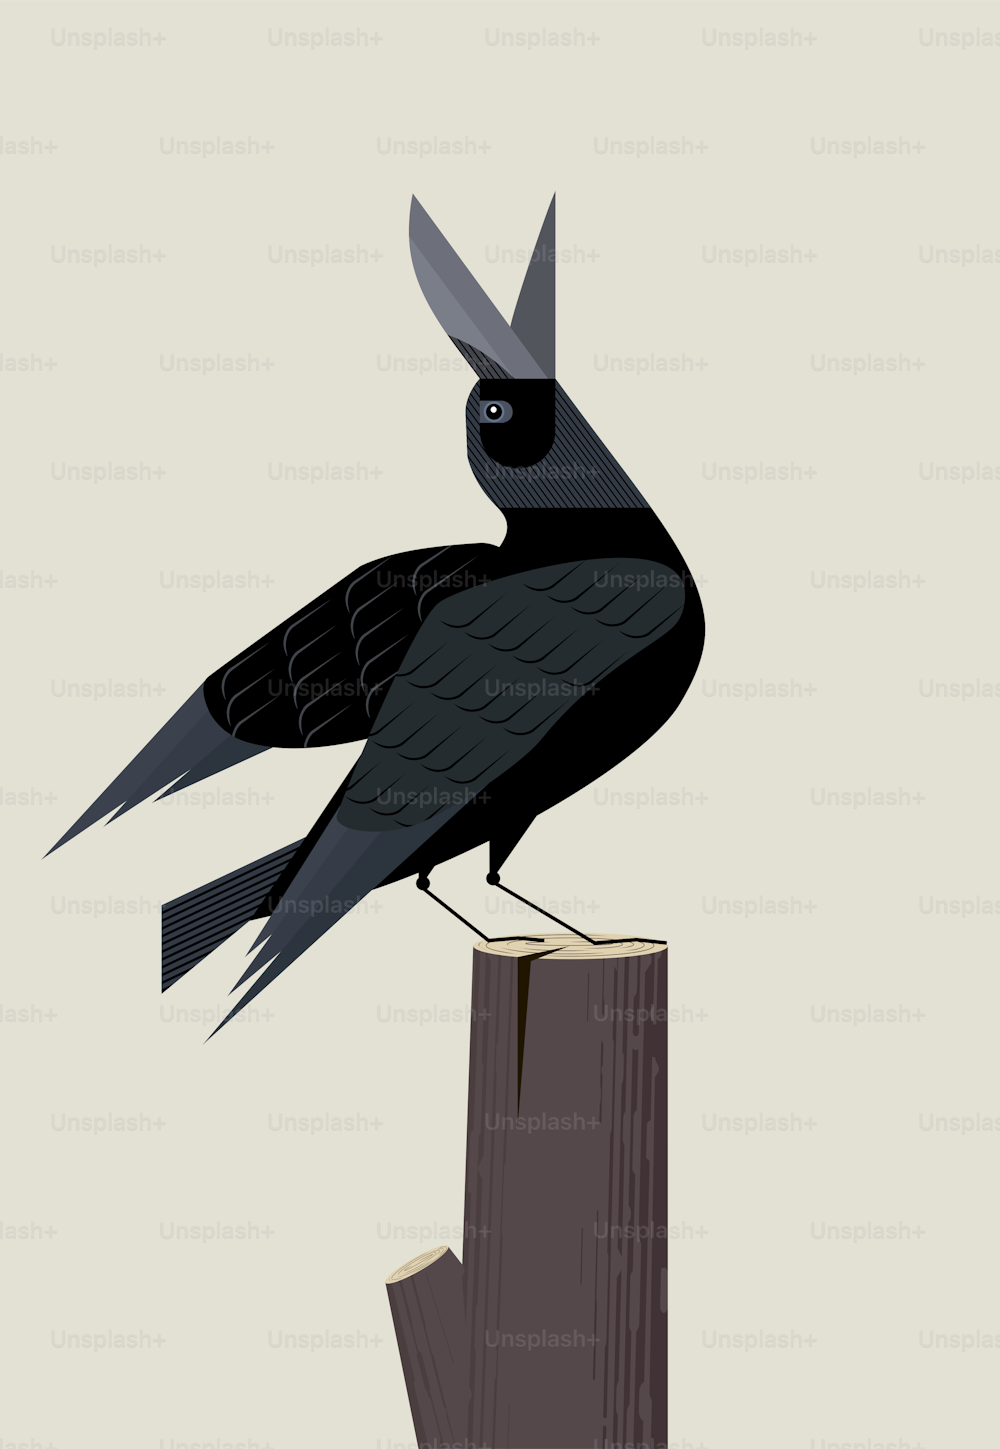 Cuervo negro se sienta en el tocón de un árbol y canta una imagen inspirada y minimalista